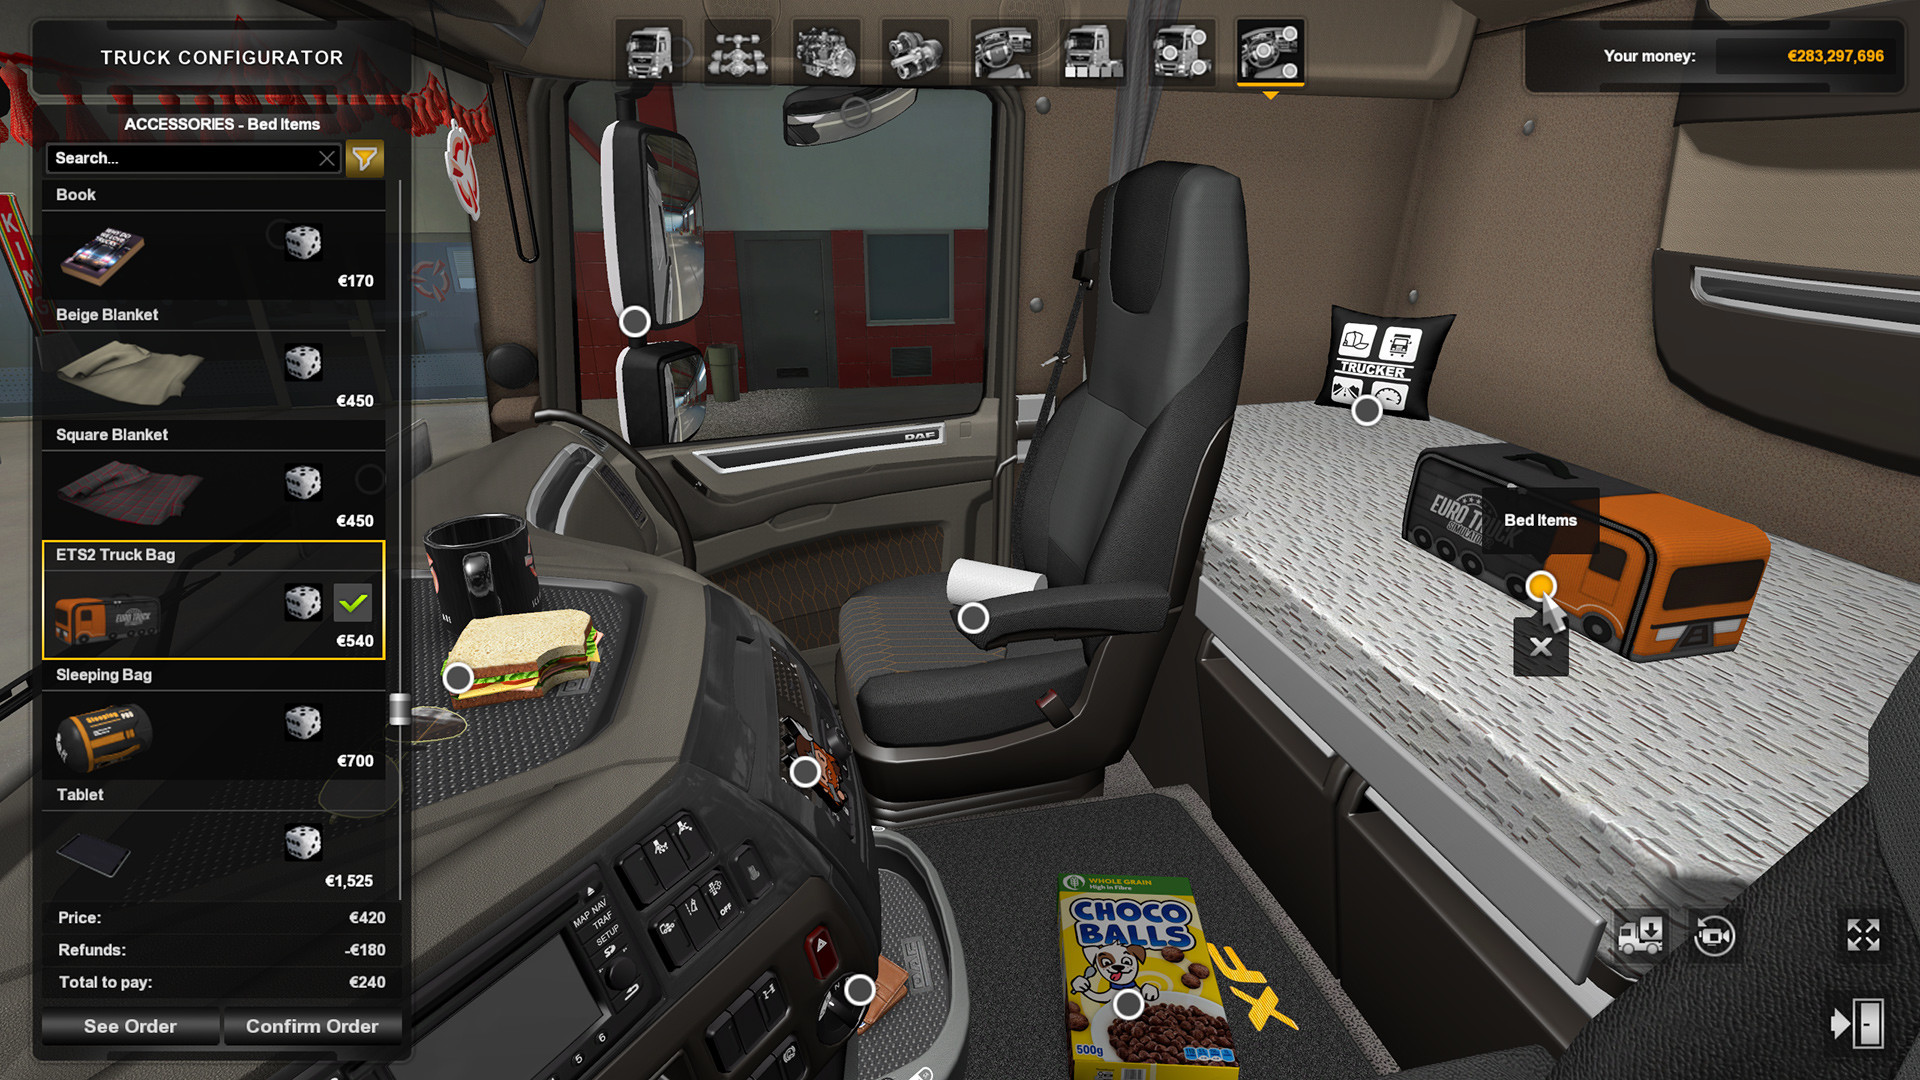 Euro Truck Simulator 2 - Cabin Accessories on Steam